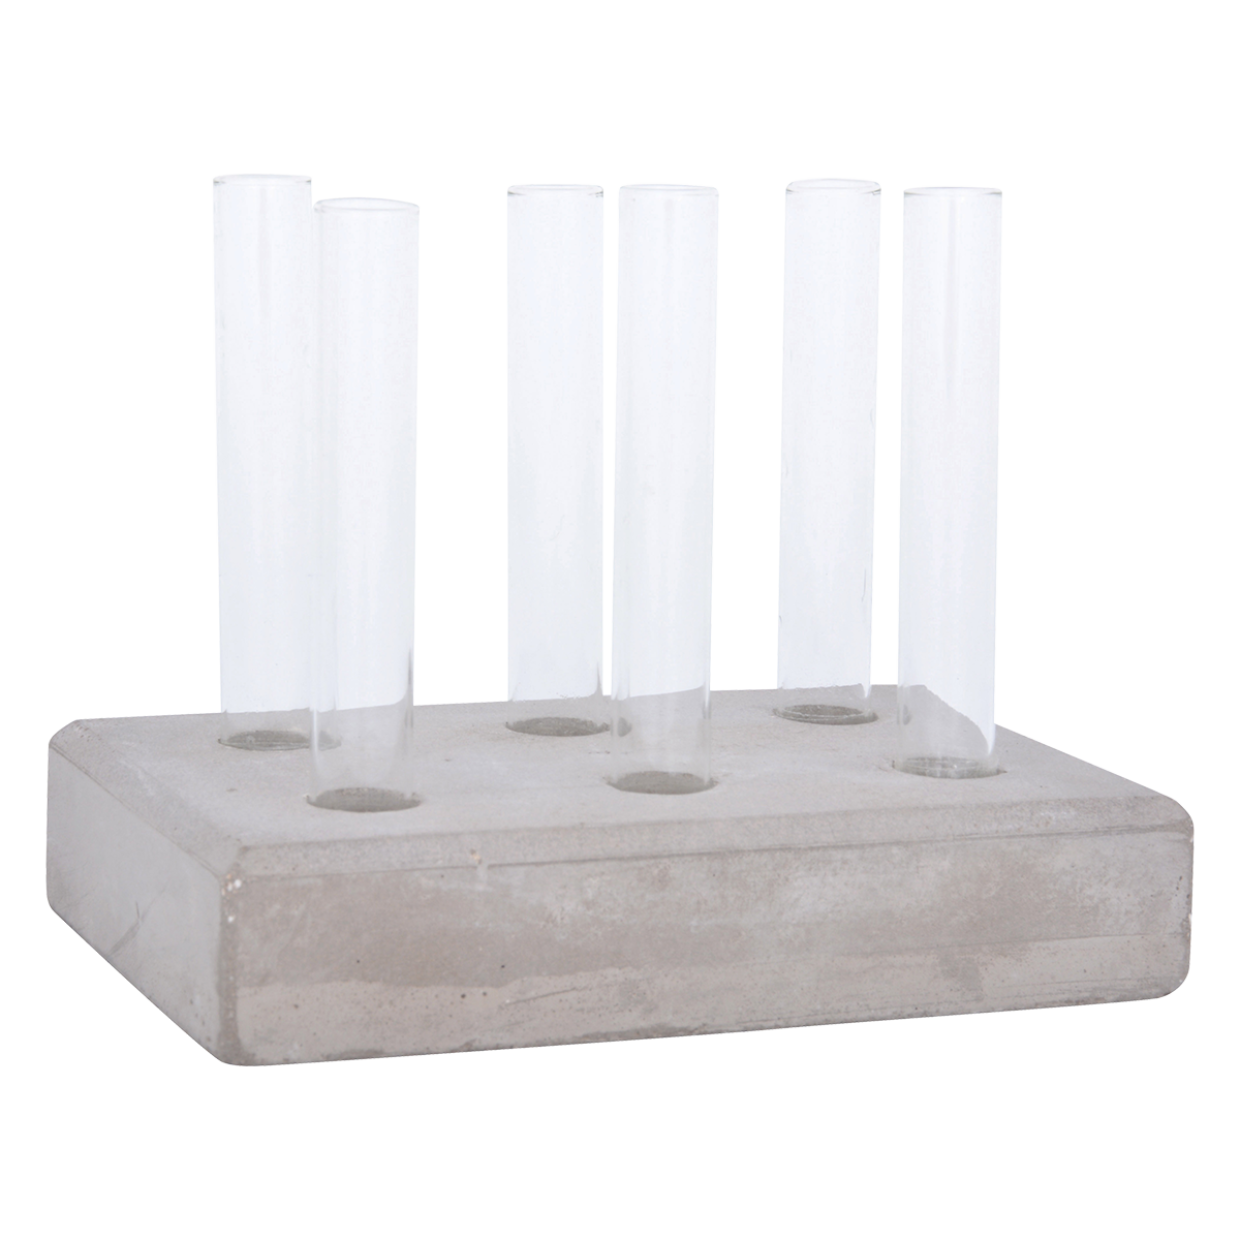 Stekstation beton met 6 glazen buisjes